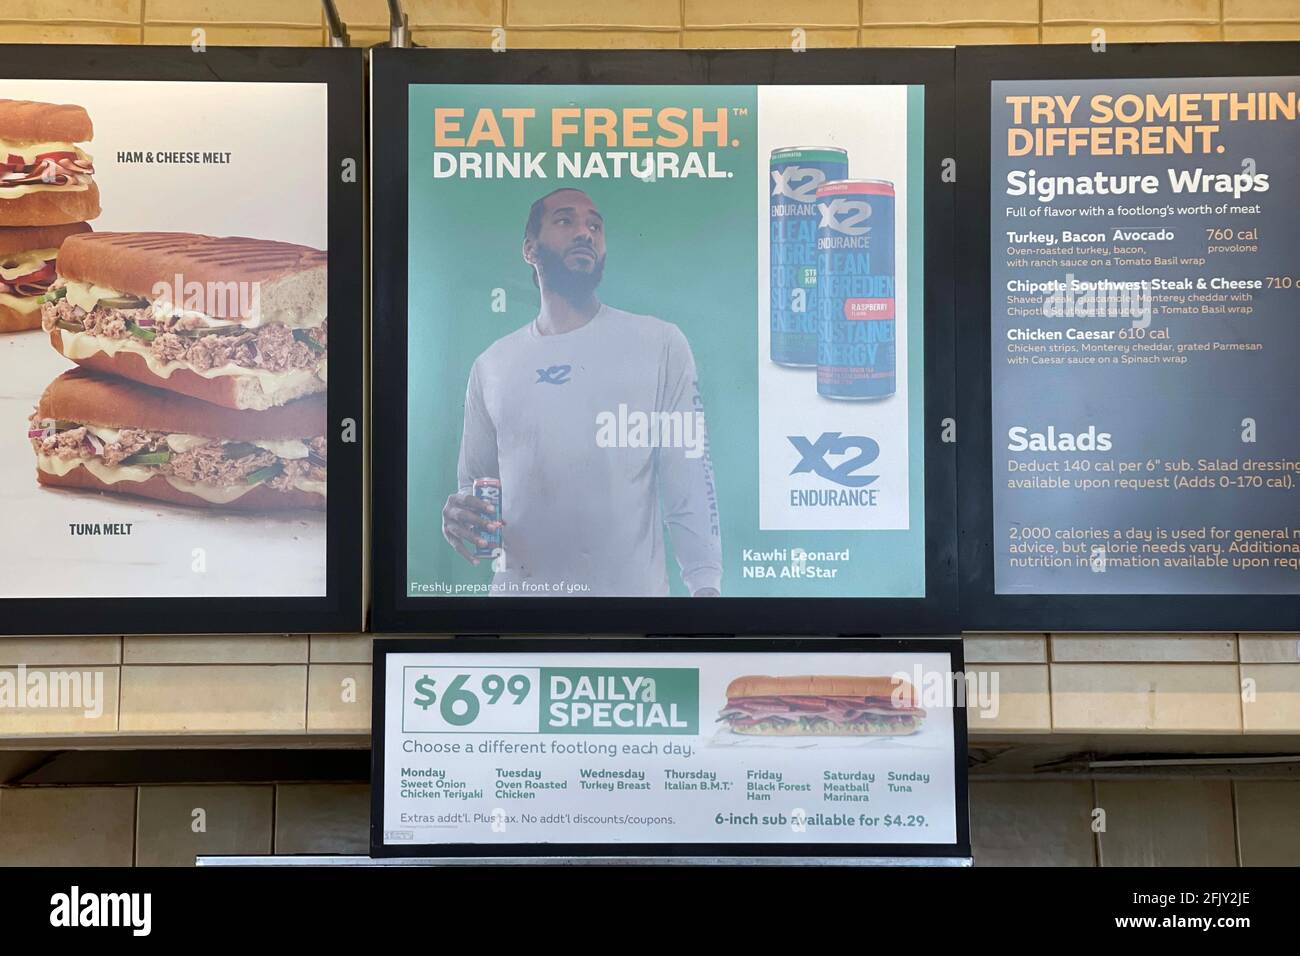 Une publicité X2 Endurance sur les boissons énergétiques naturelles mettant en vedette LA Clippers avant Kawhi Leonard au restaurant Subway, le lundi 26 avril 2021, à Monter Banque D'Images